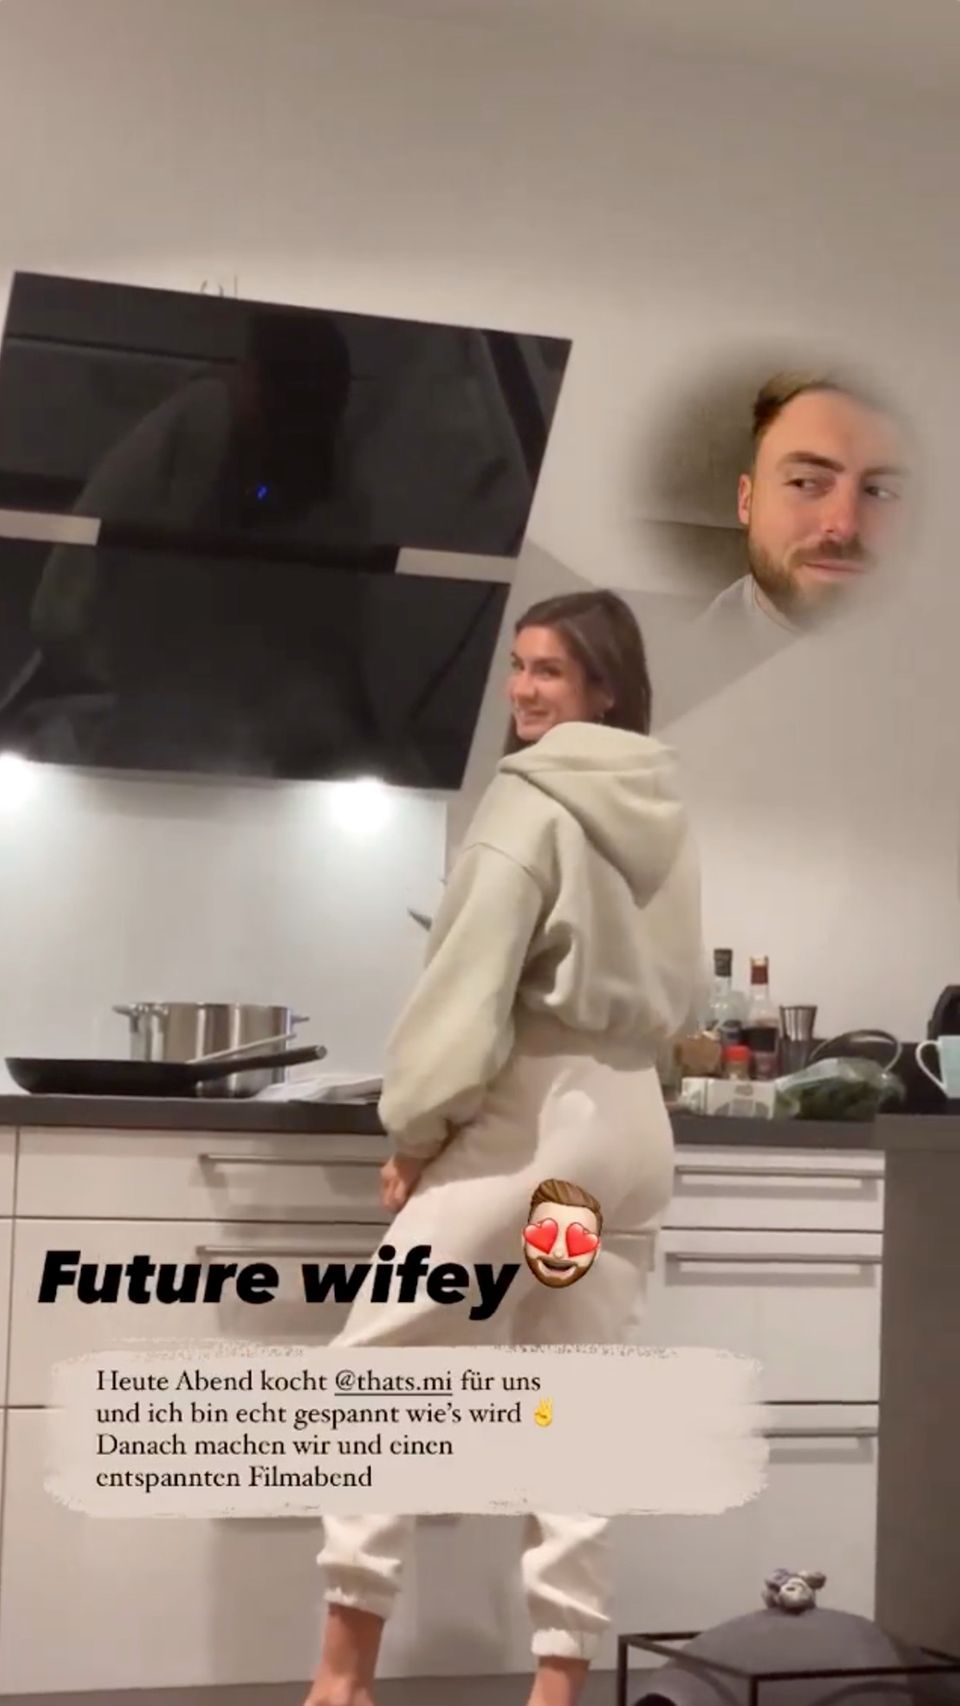 Niko Griesert bezeichnet seine Michele de Roos in seiner Instagram Story als "künftige Ehefrau".